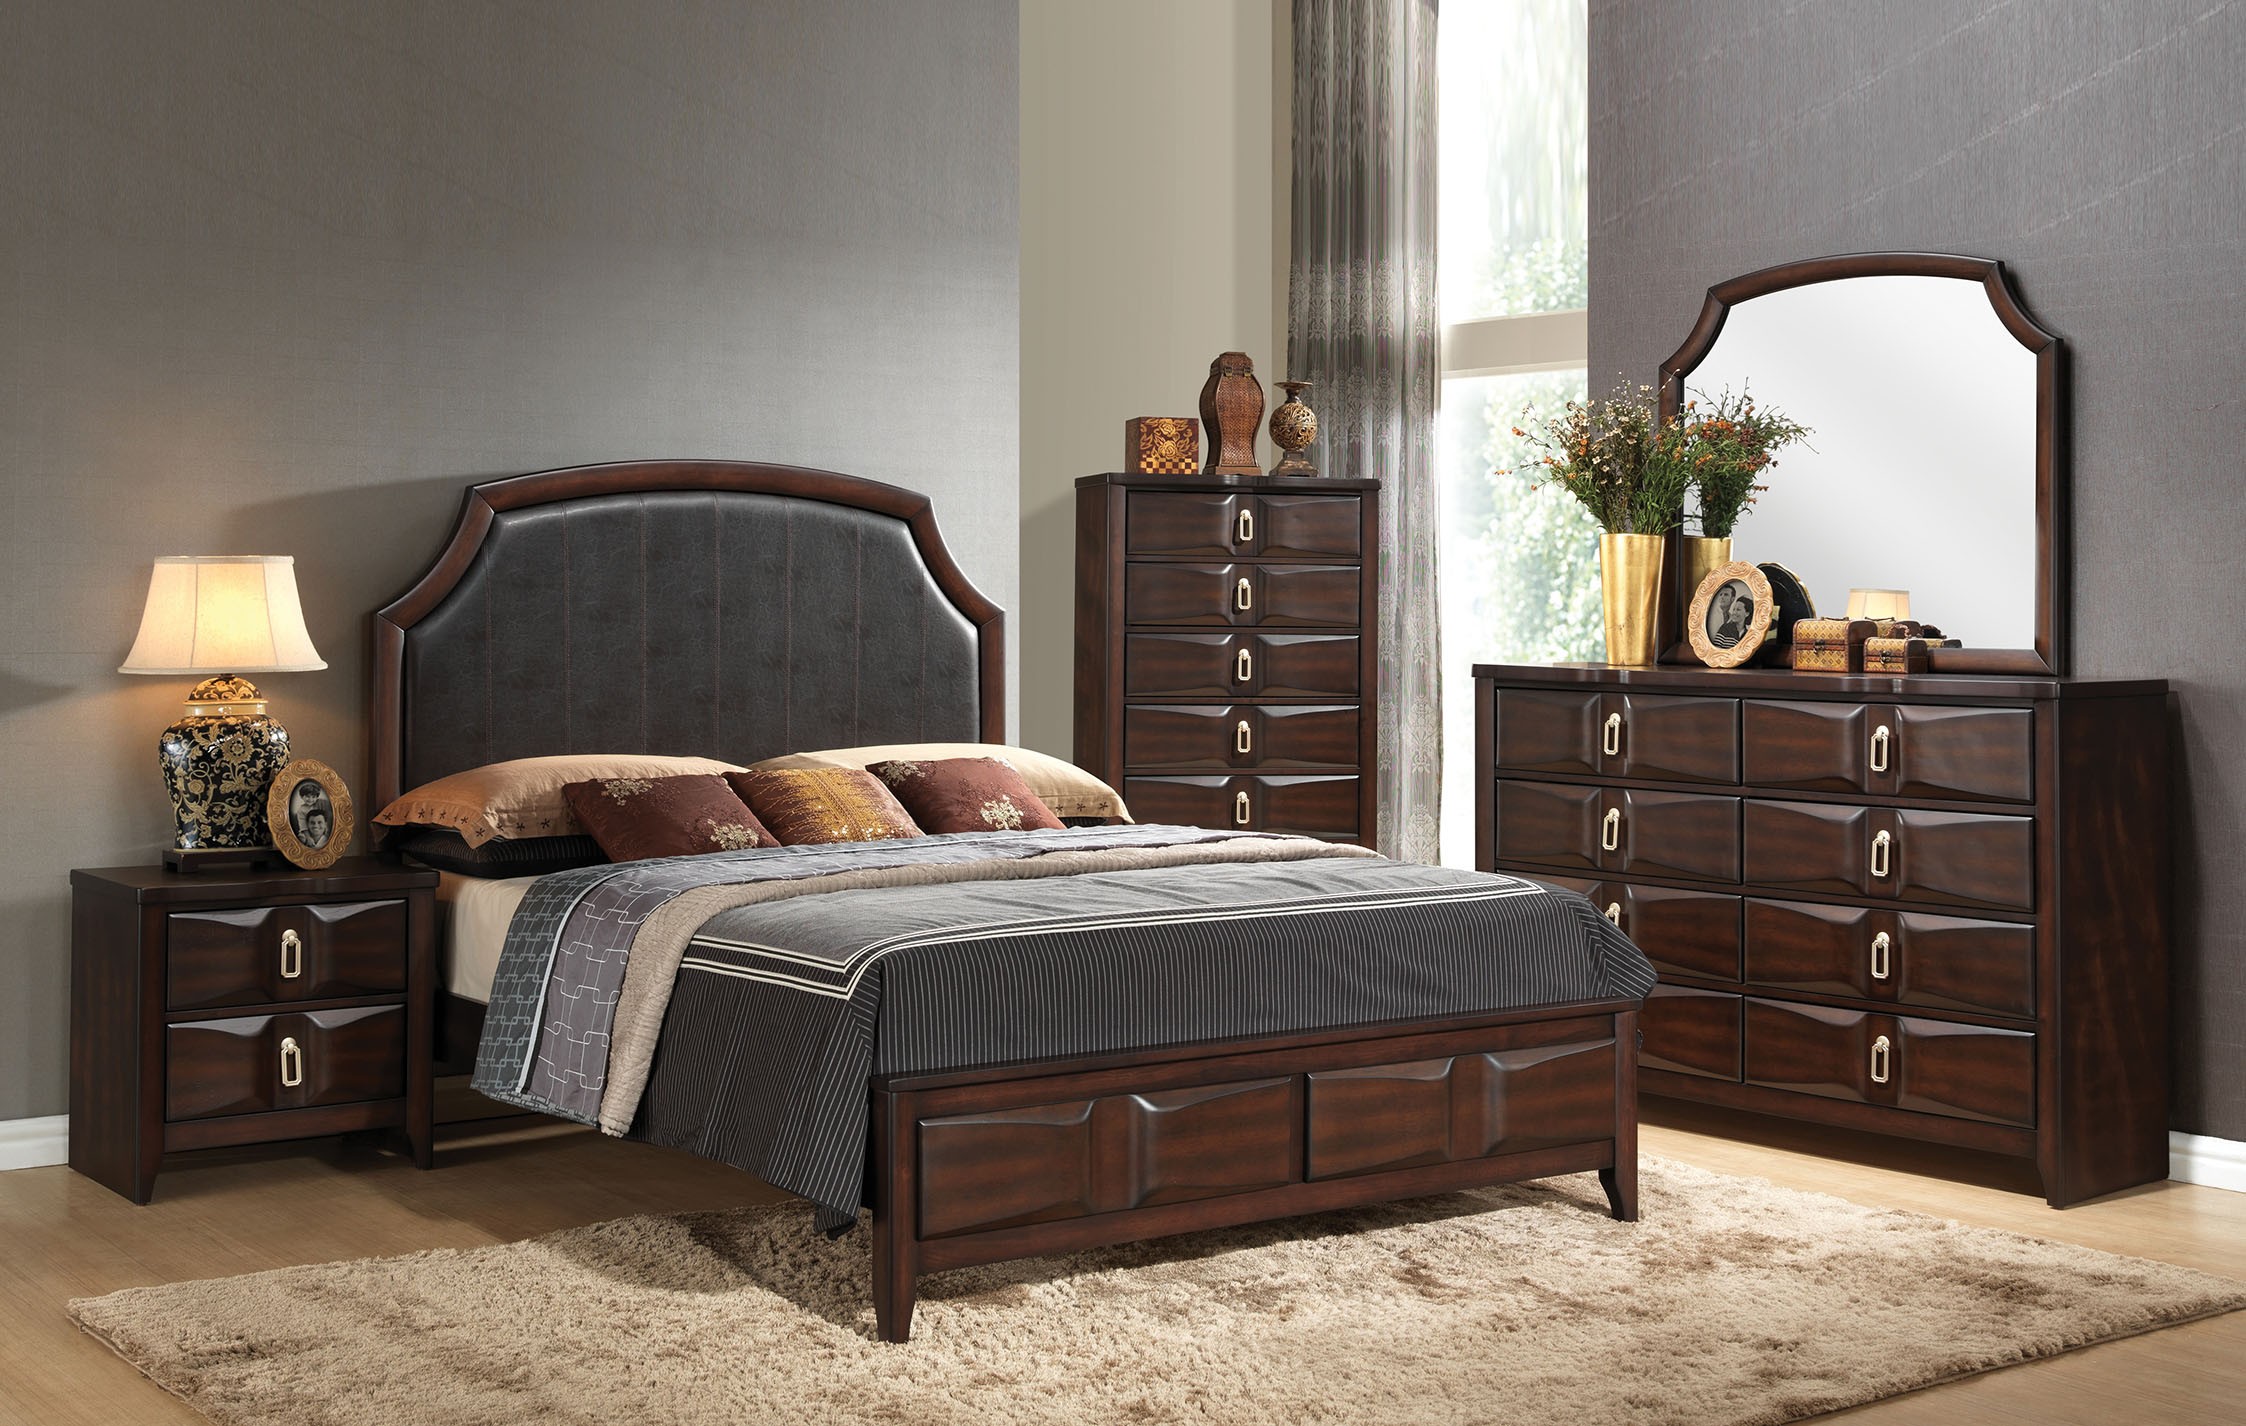 lancaster bedroom furniture set reviews